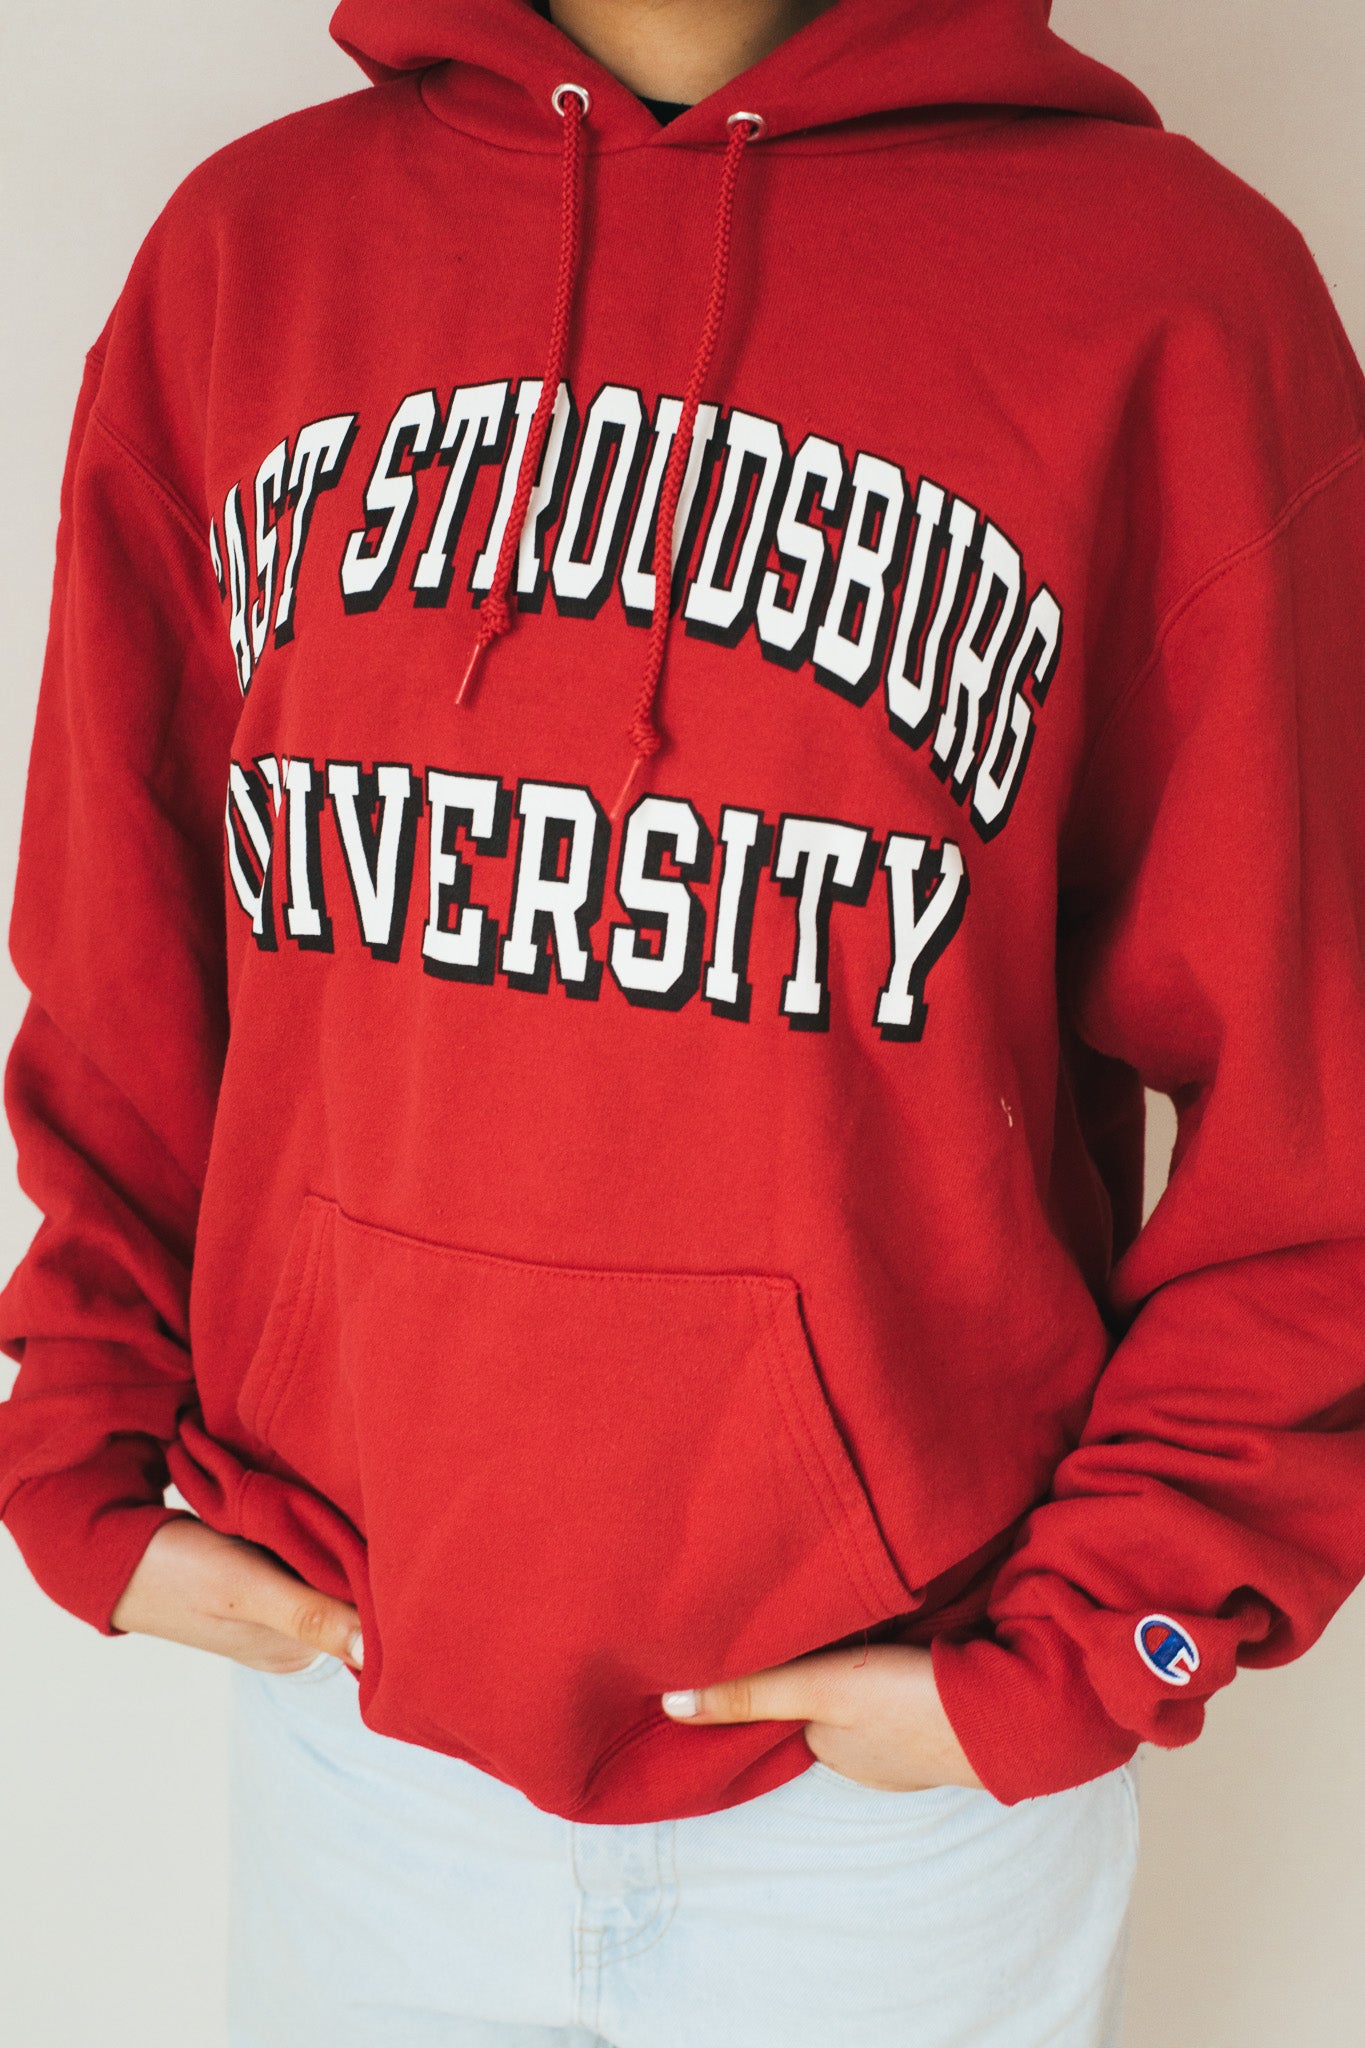 Fast Stroudsburg University - Hoodie